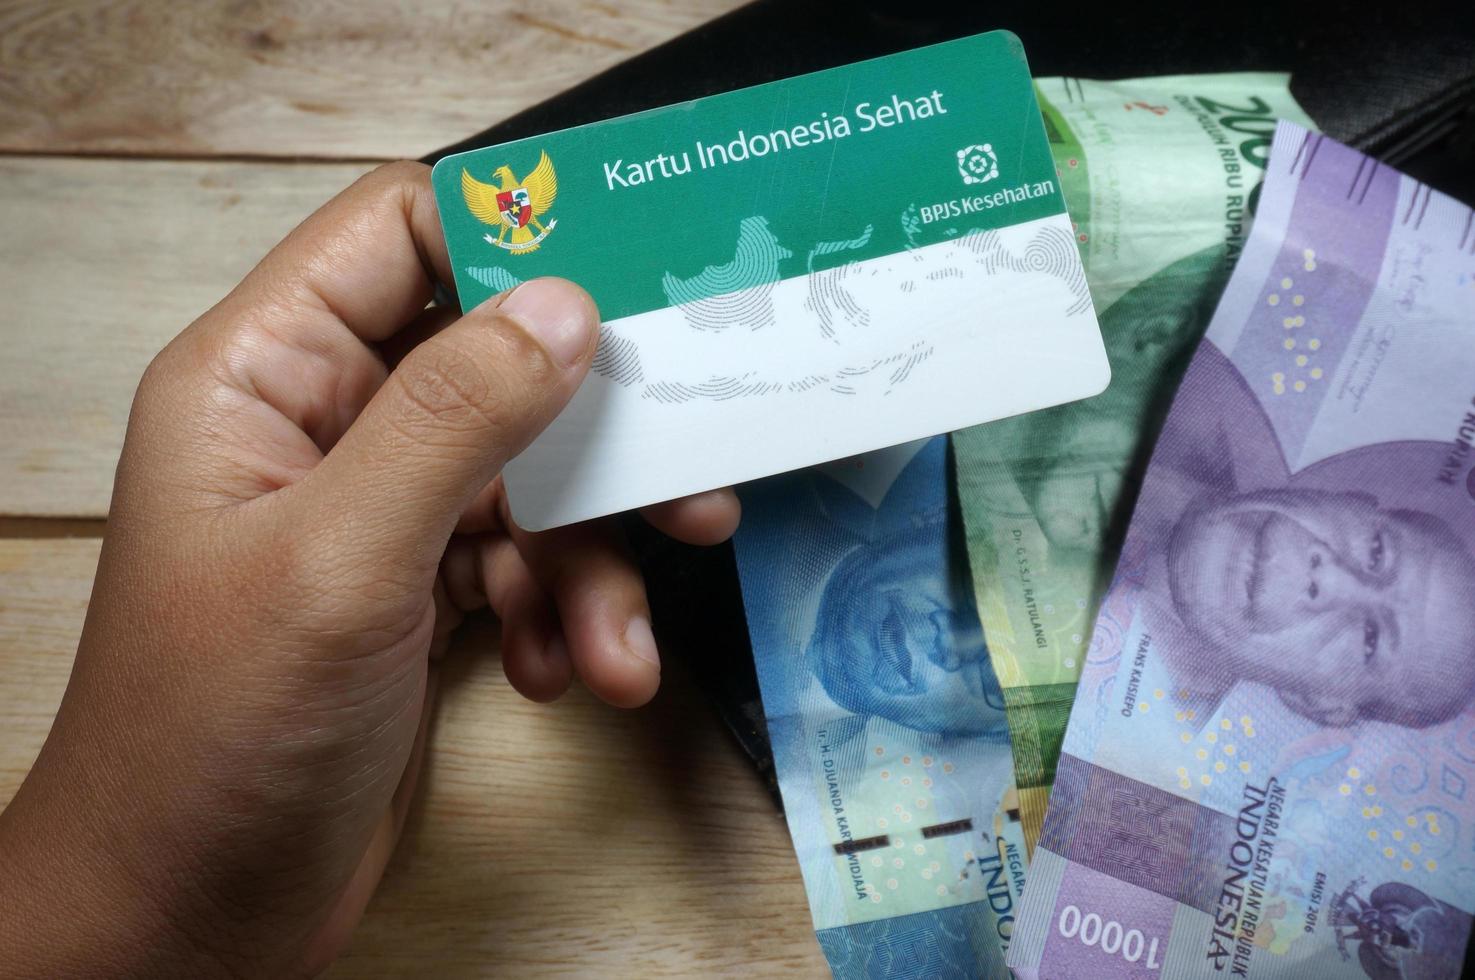 sangatta, kalimantan oriental, indonésie,13 mai 2020 - les cartes bpjs sont destinées aux participants à l'assurance appartenant au gouvernement de la république d'indonésie photo